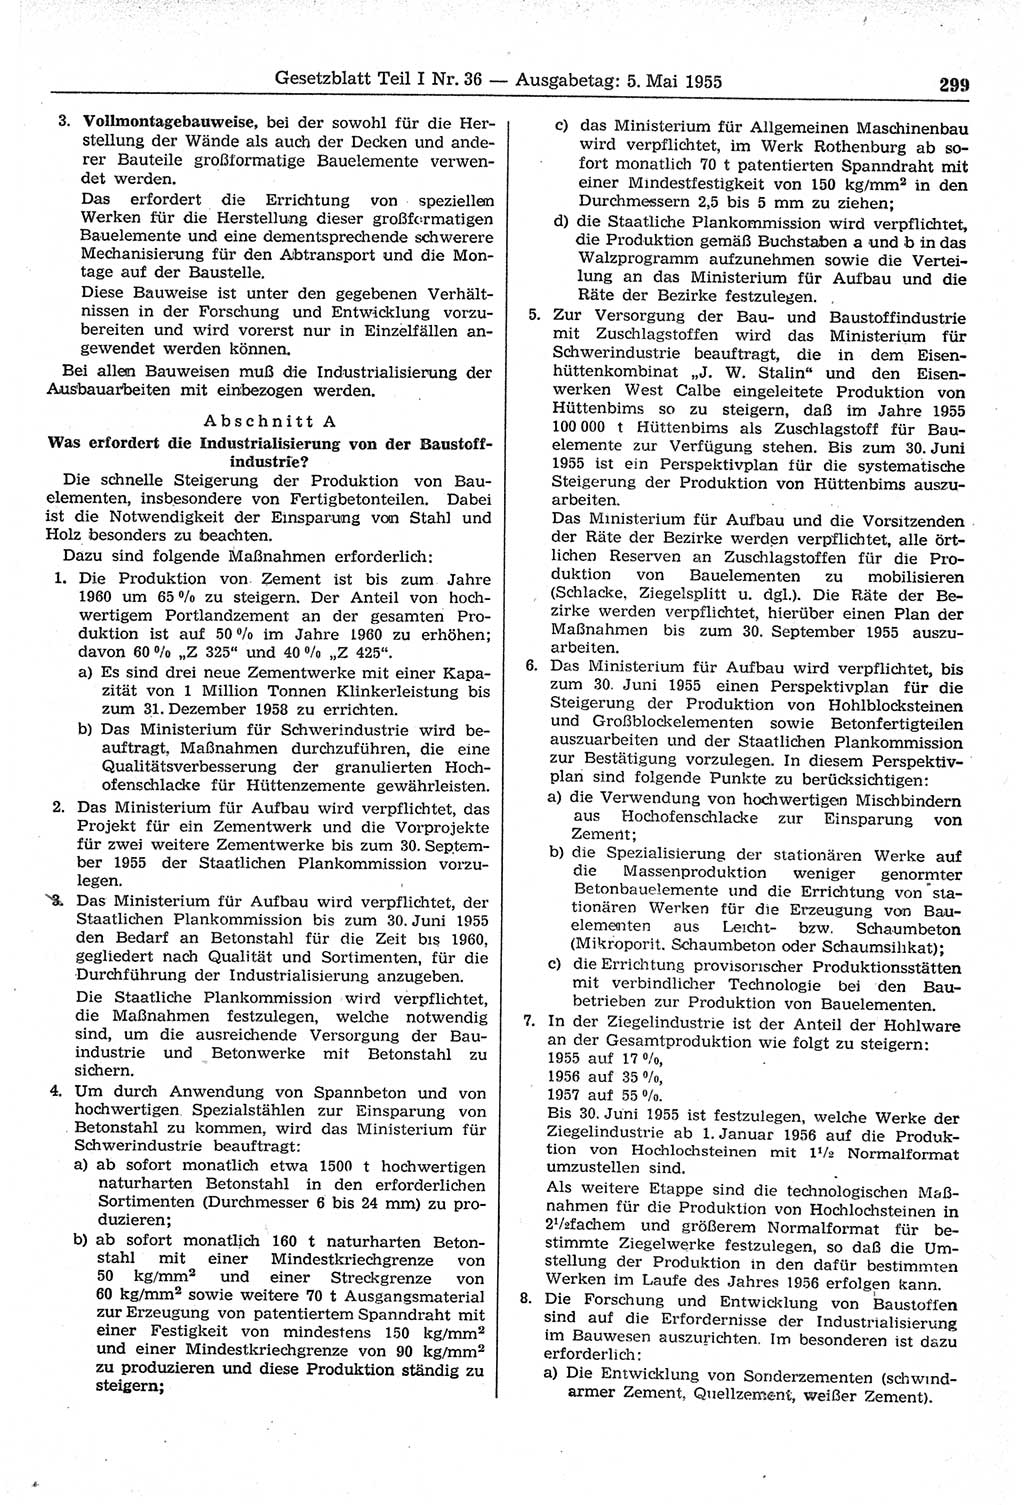 Gesetzblatt (GBl.) der Deutschen Demokratischen Republik (DDR) Teil Ⅰ 1955, Seite 299 (GBl. DDR Ⅰ 1955, S. 299)